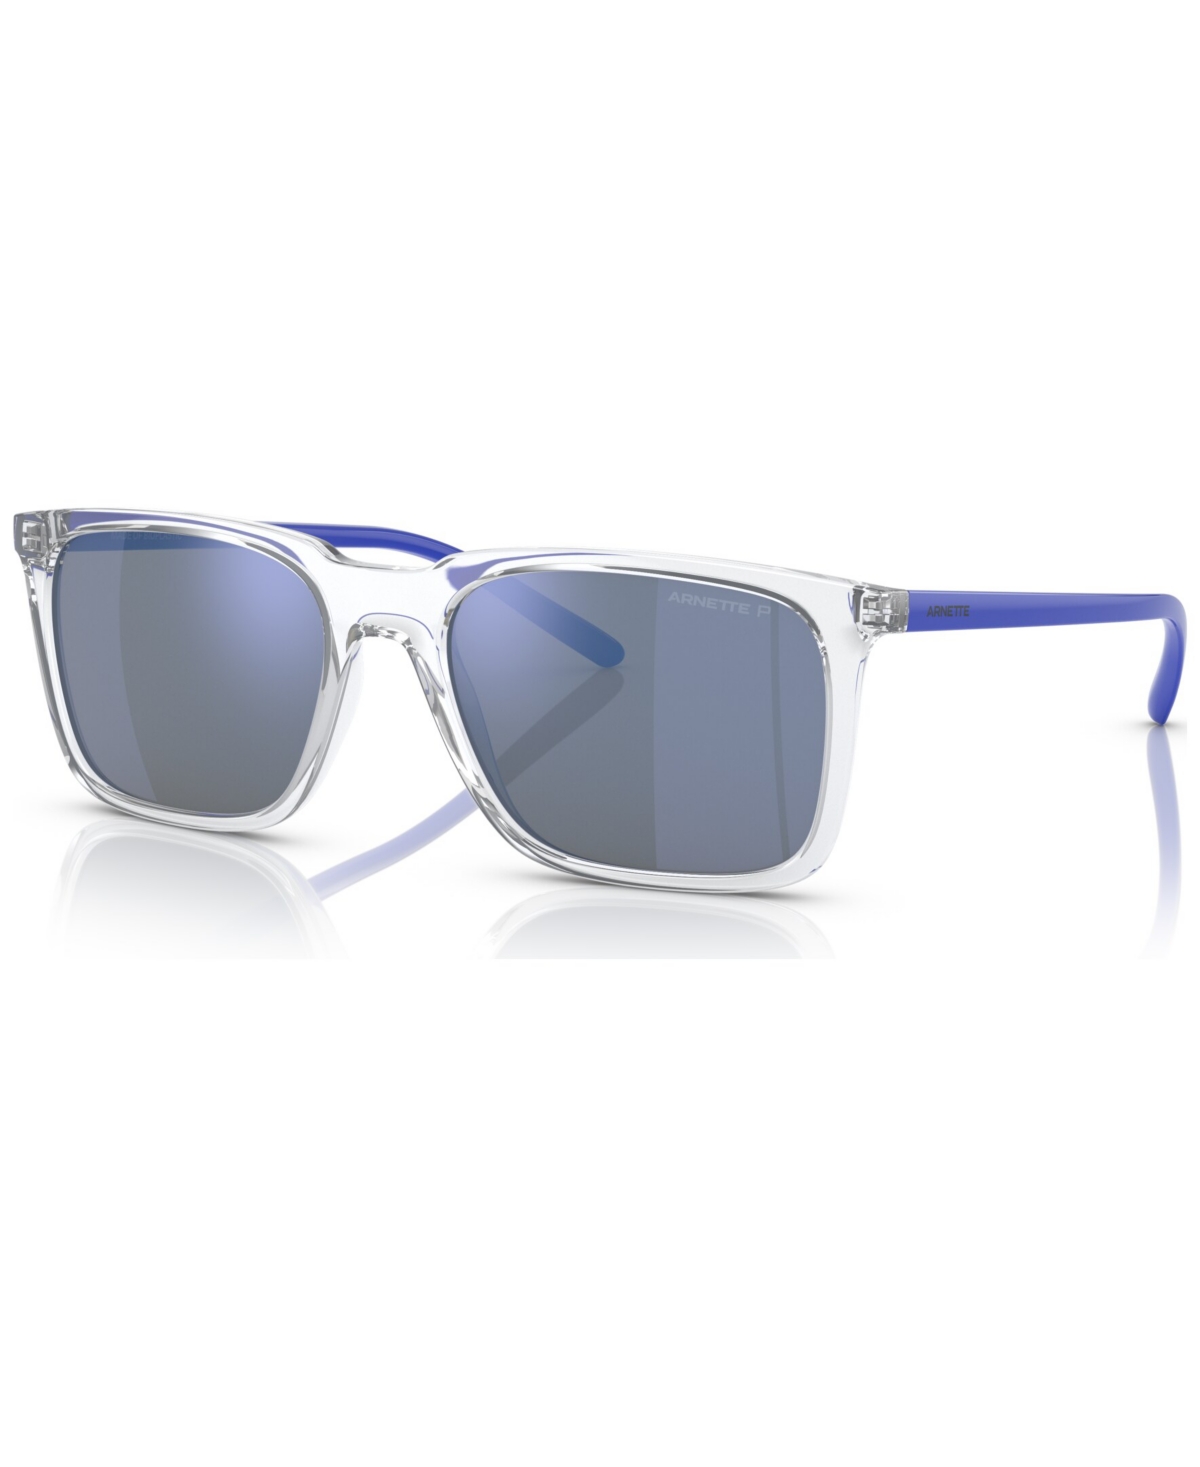 Unisex Polarized Sunglasses, AN431456-zp - Crystal